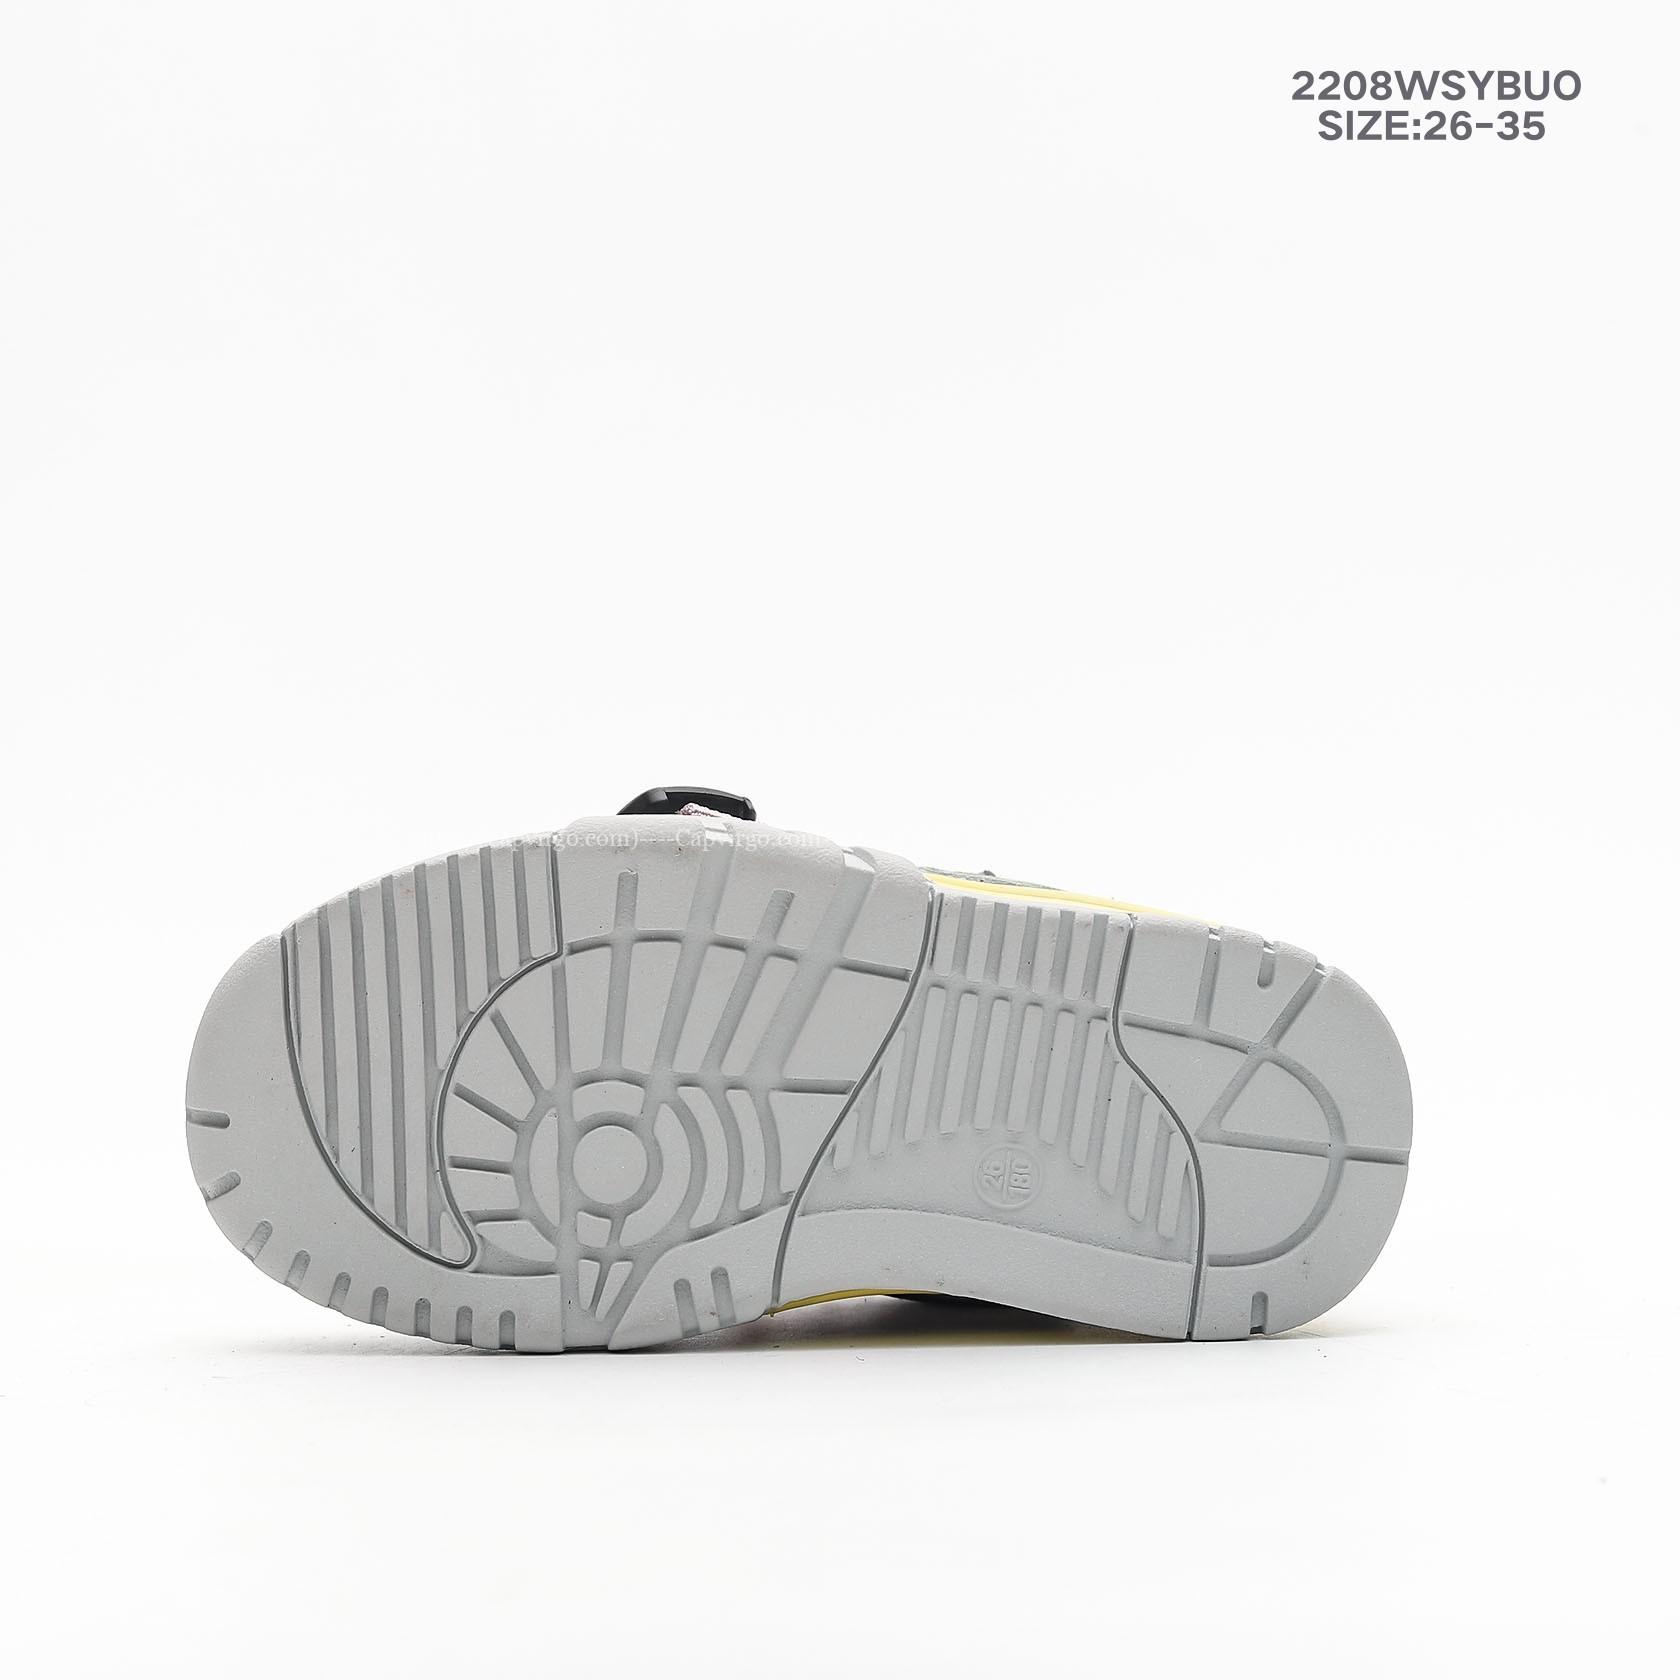 Giày trẻ em Nike Air Jordan 1 cổ điển màu ghi